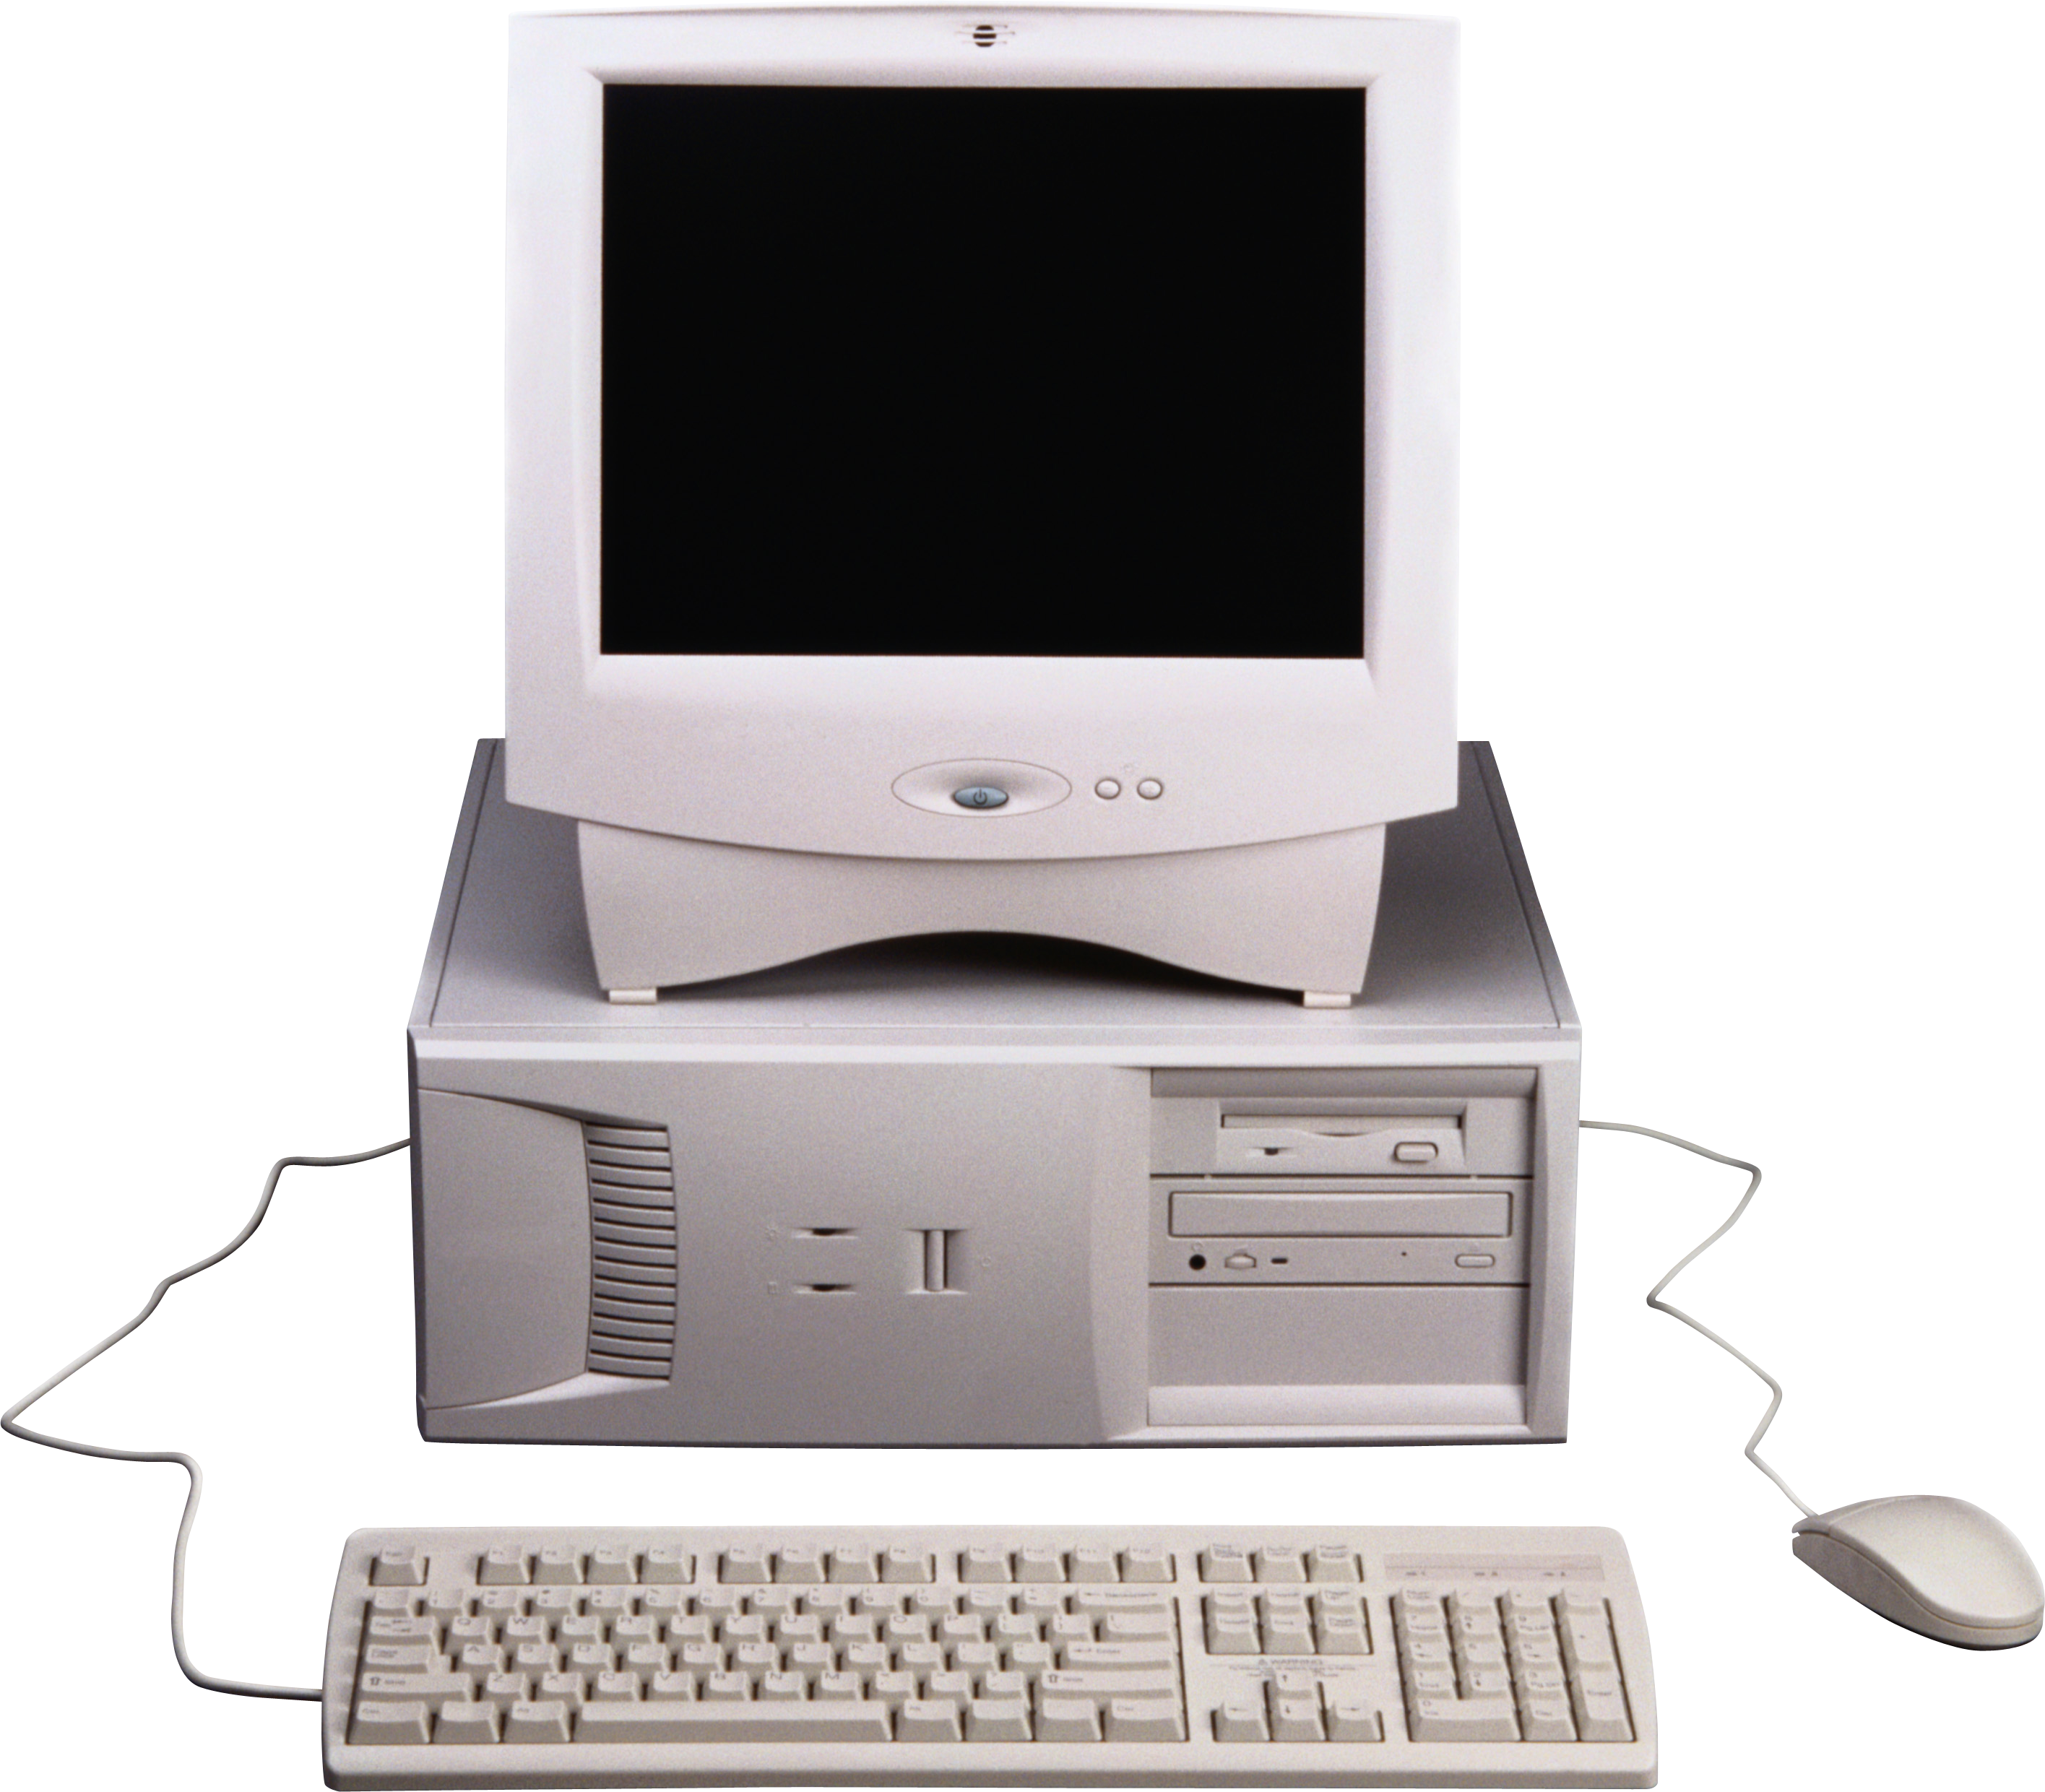 Computer-Desktop-Computer